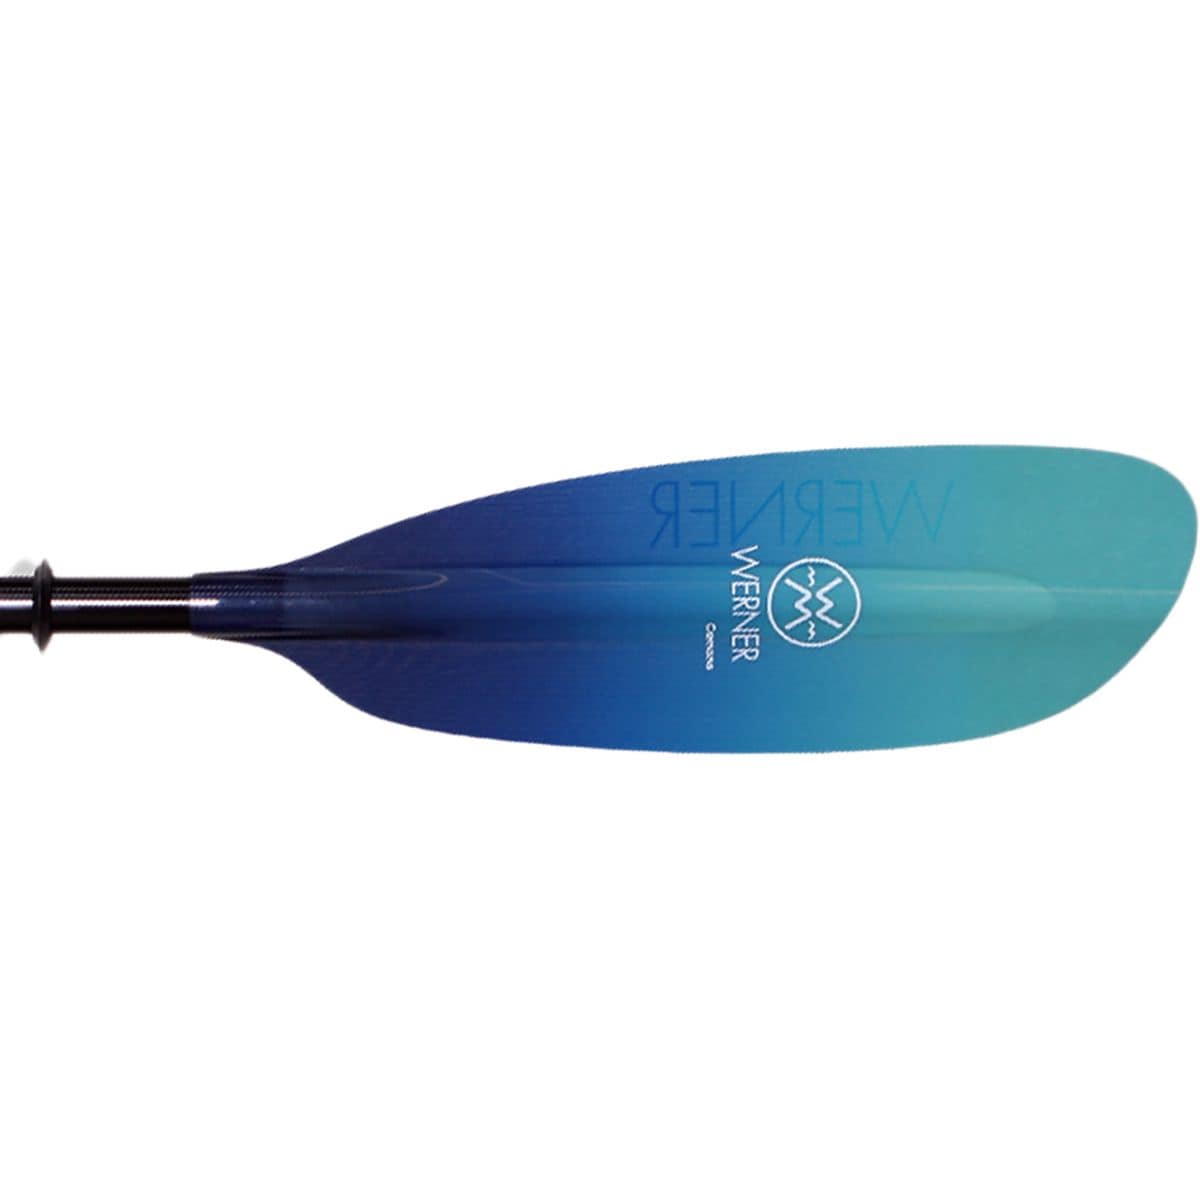 Camano Fiberglass 2-Piece Paddle - Bent Shaft